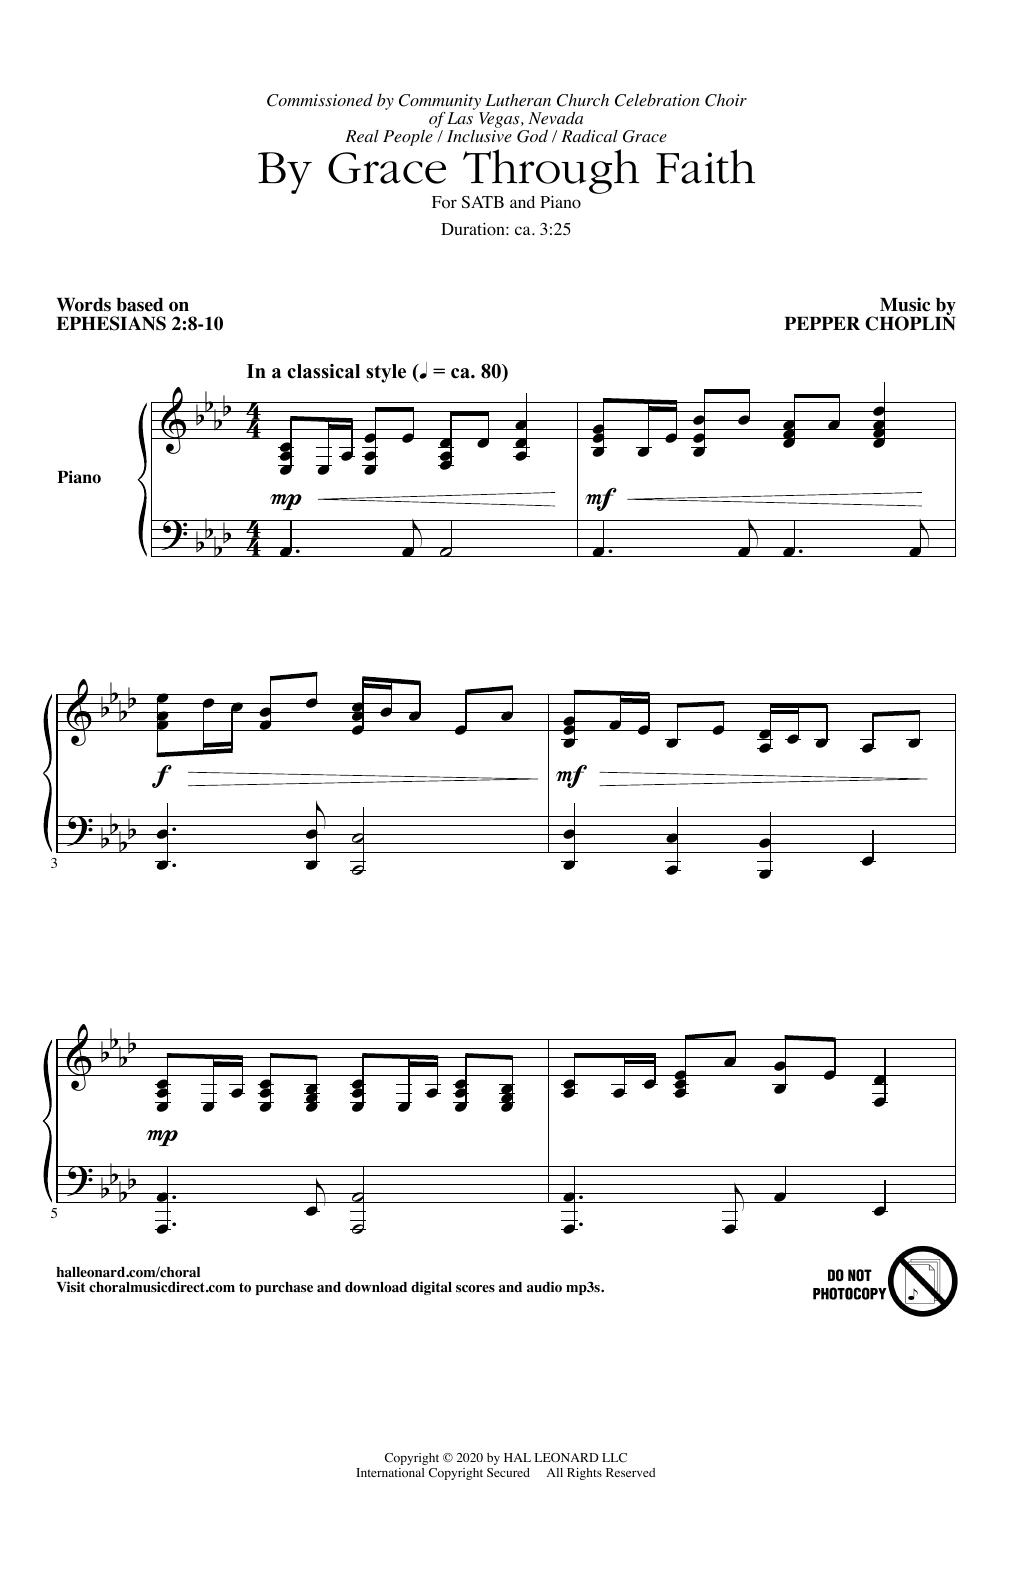 Pepper Choplin By Grace Through Faith Sheet Music Notes & Chords for SATB Choir - Download or Print PDF